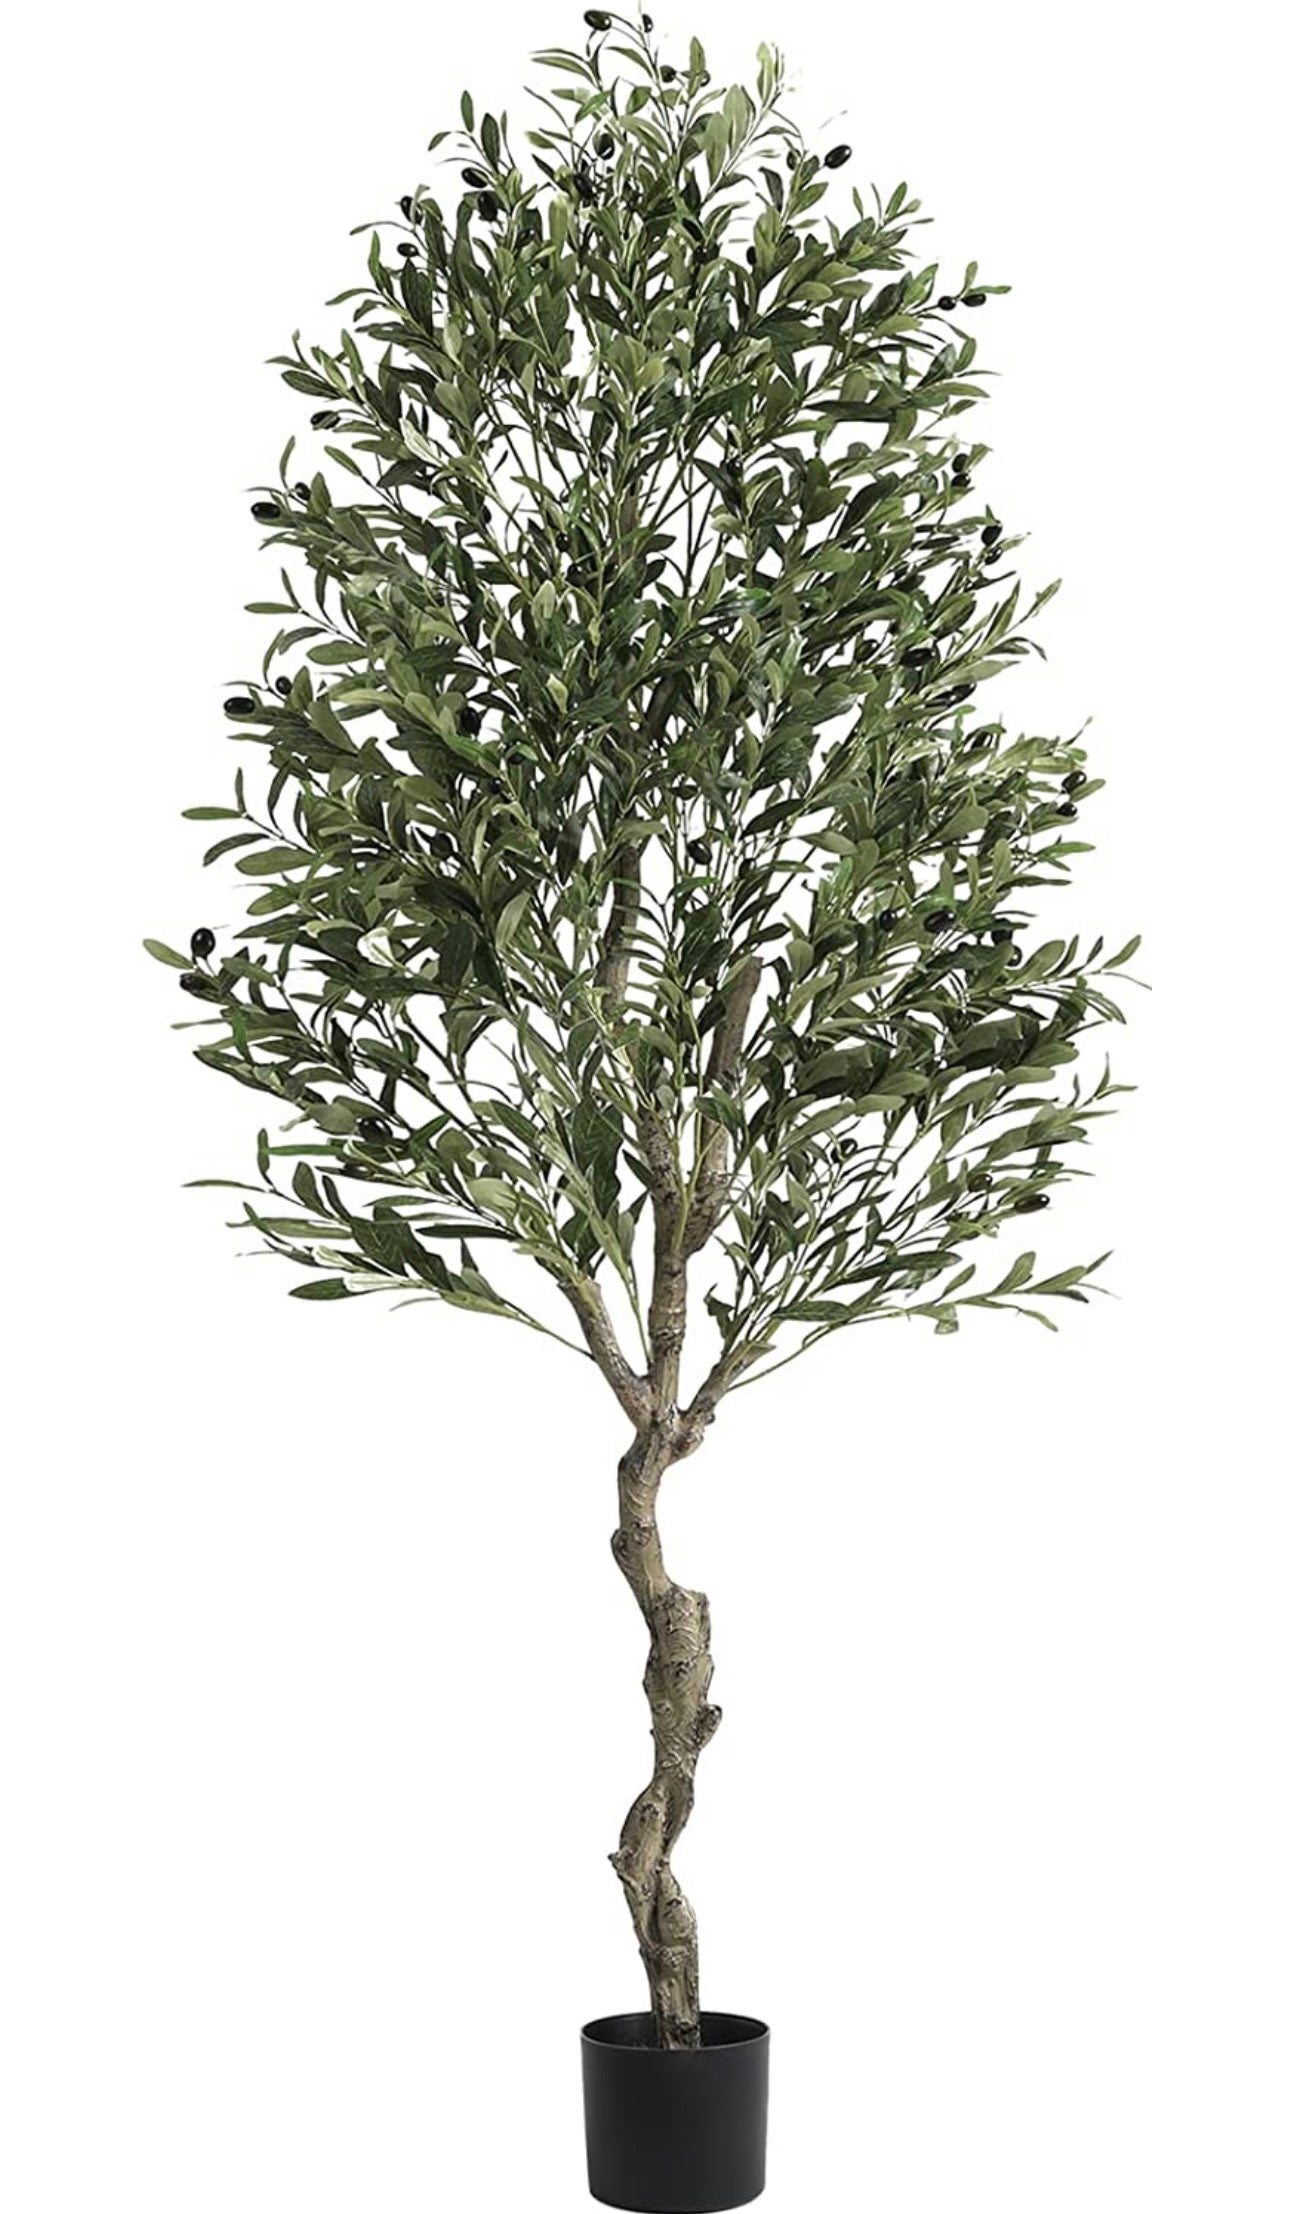 Rama olivo artificial grande con aceitunas de plastico